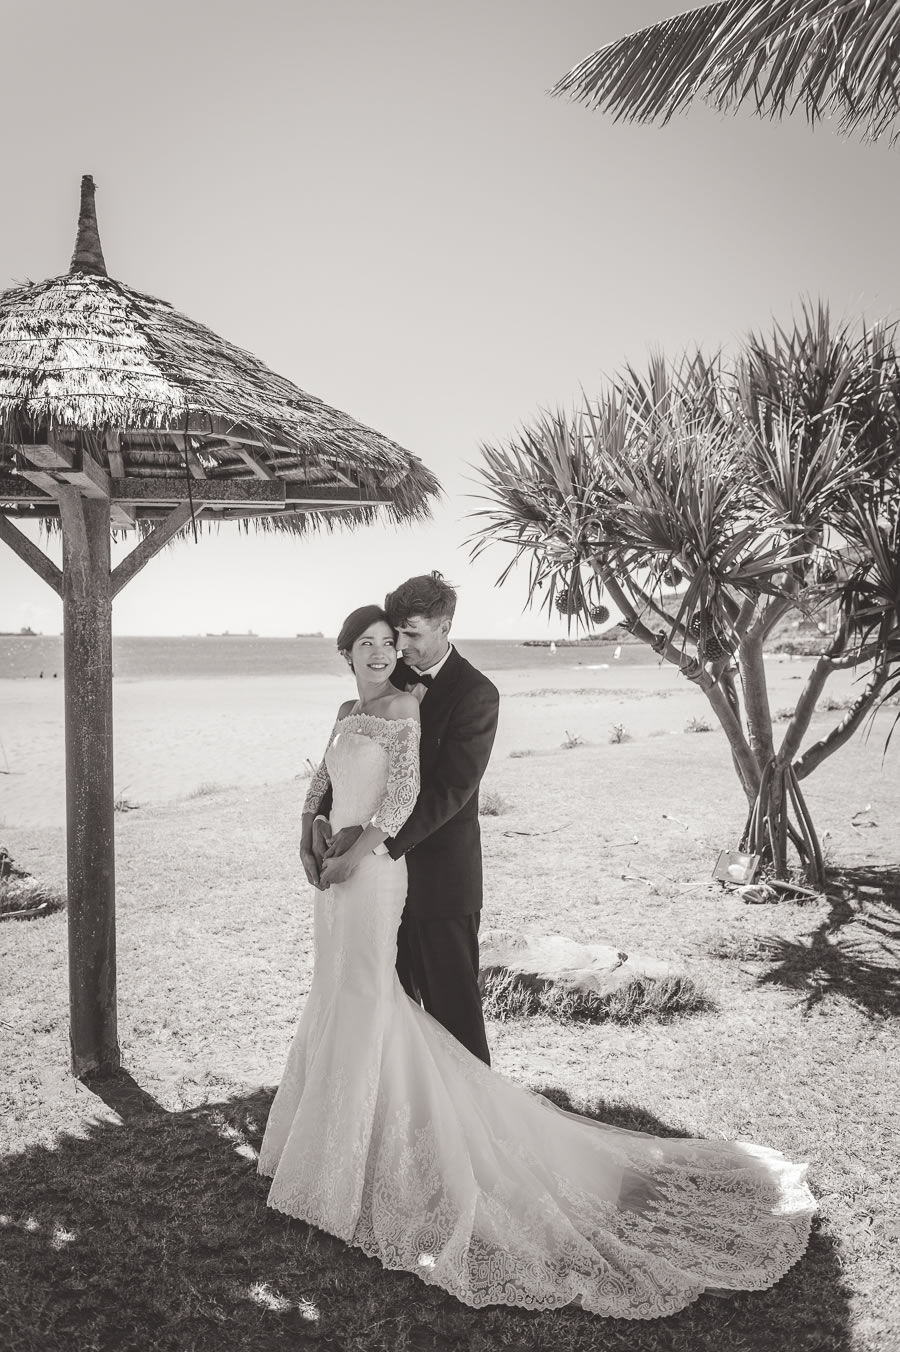 高雄 婚攝, 婚禮攝影, 婚禮記錄, 美式婚禮, 西式證婚,Taipei Wedding photography, 西子灣沙灘會館, Sizihwan Sunset Beach Resort